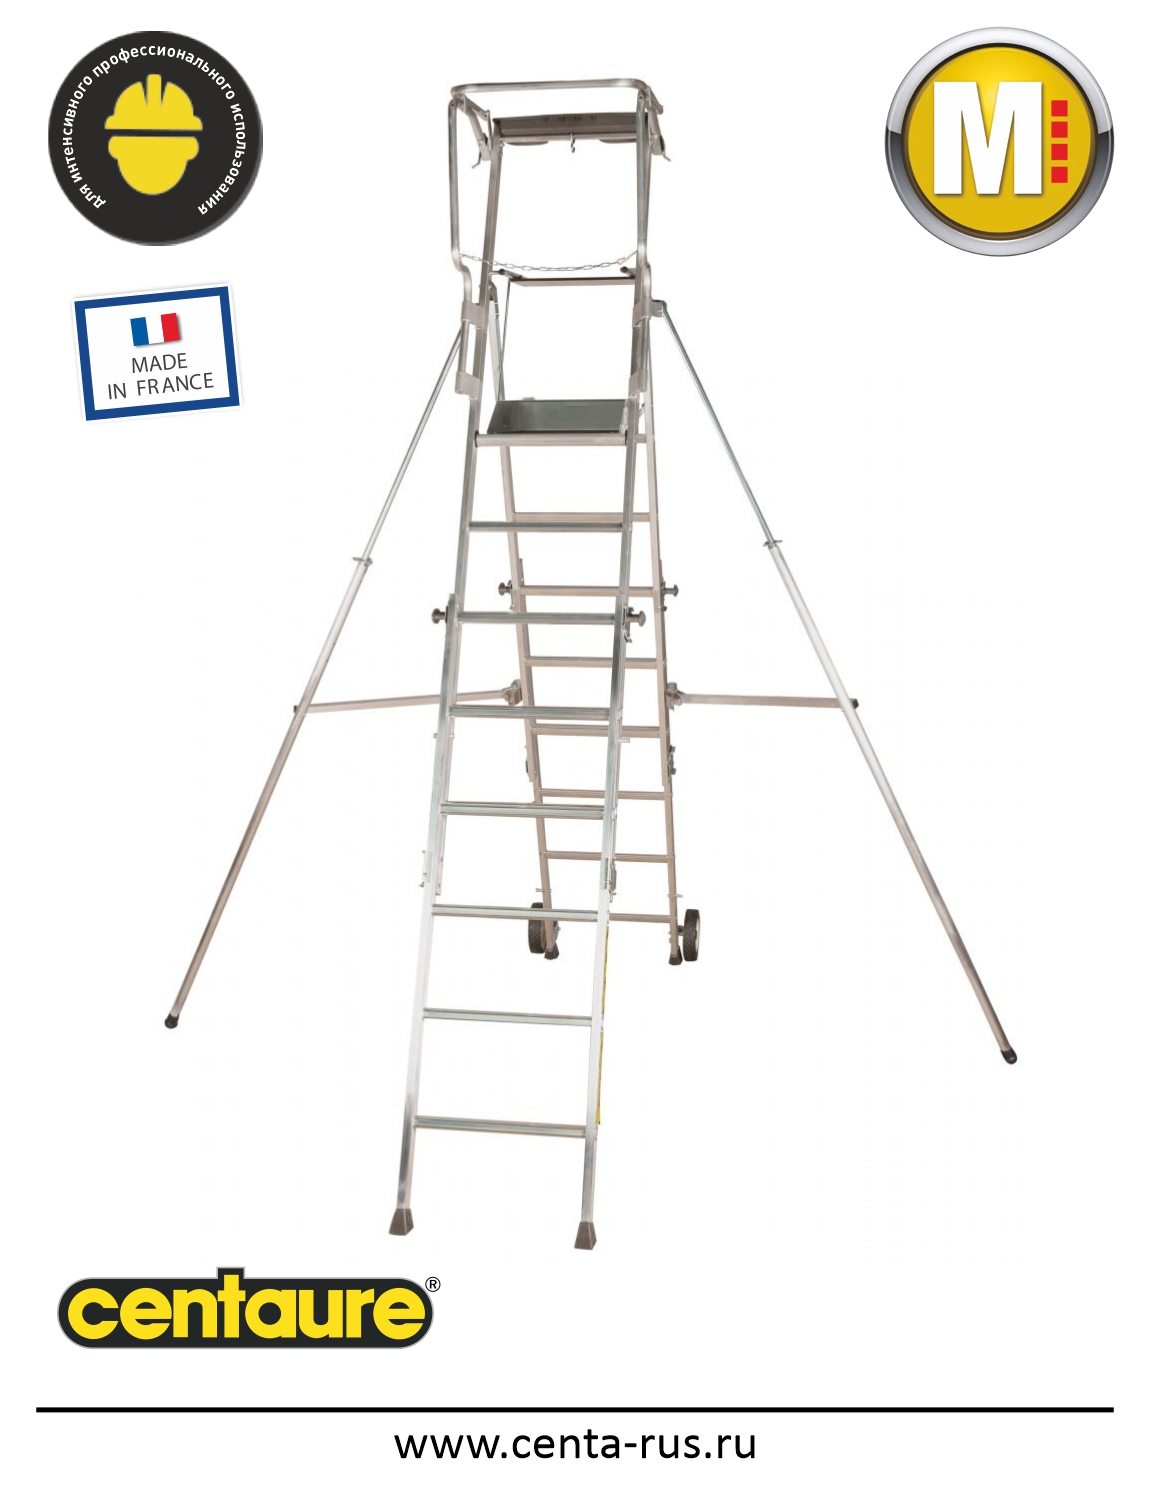 Рабочая платформа с регулируемой высотой Centaure PL SCOP 6/9 ступеней 415926